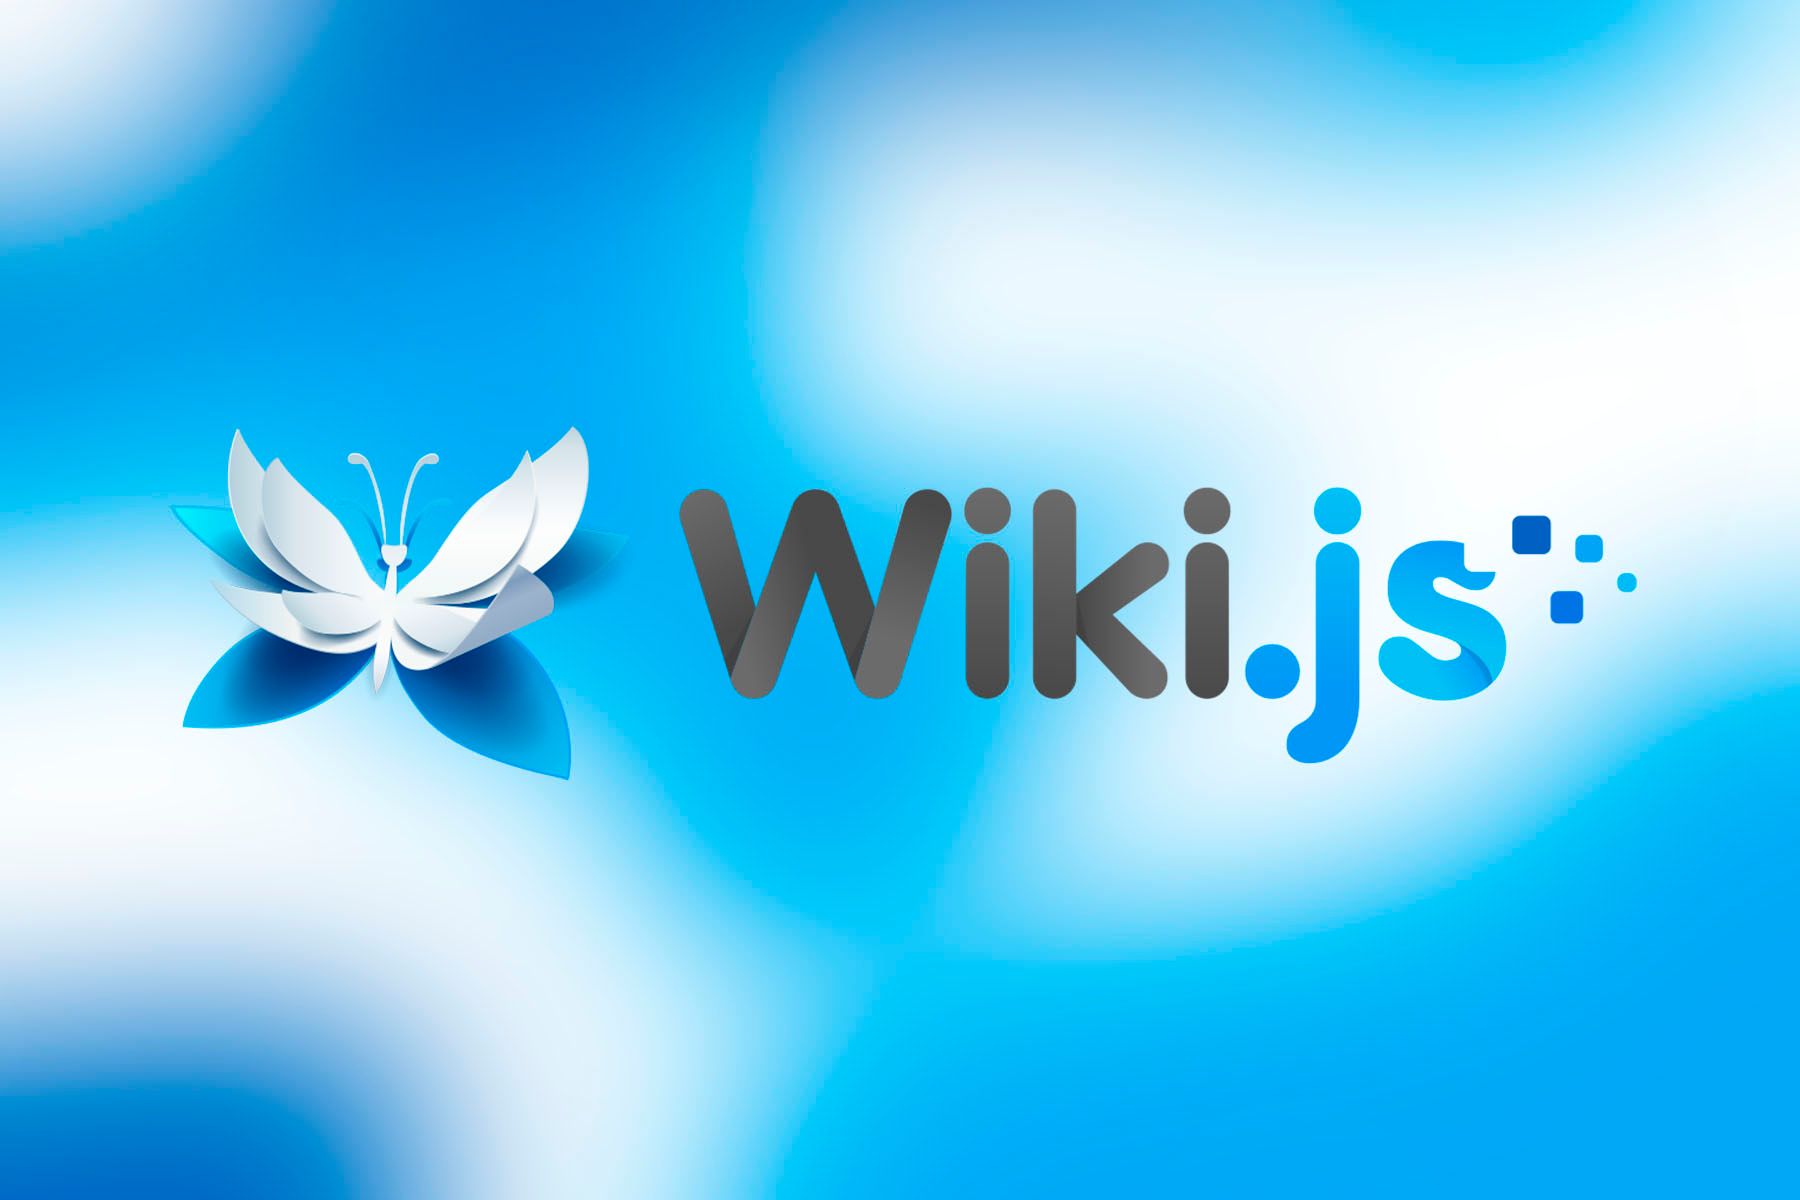 «Википедия» обновила дизайн сайта впервые за 10 лет / Хабр